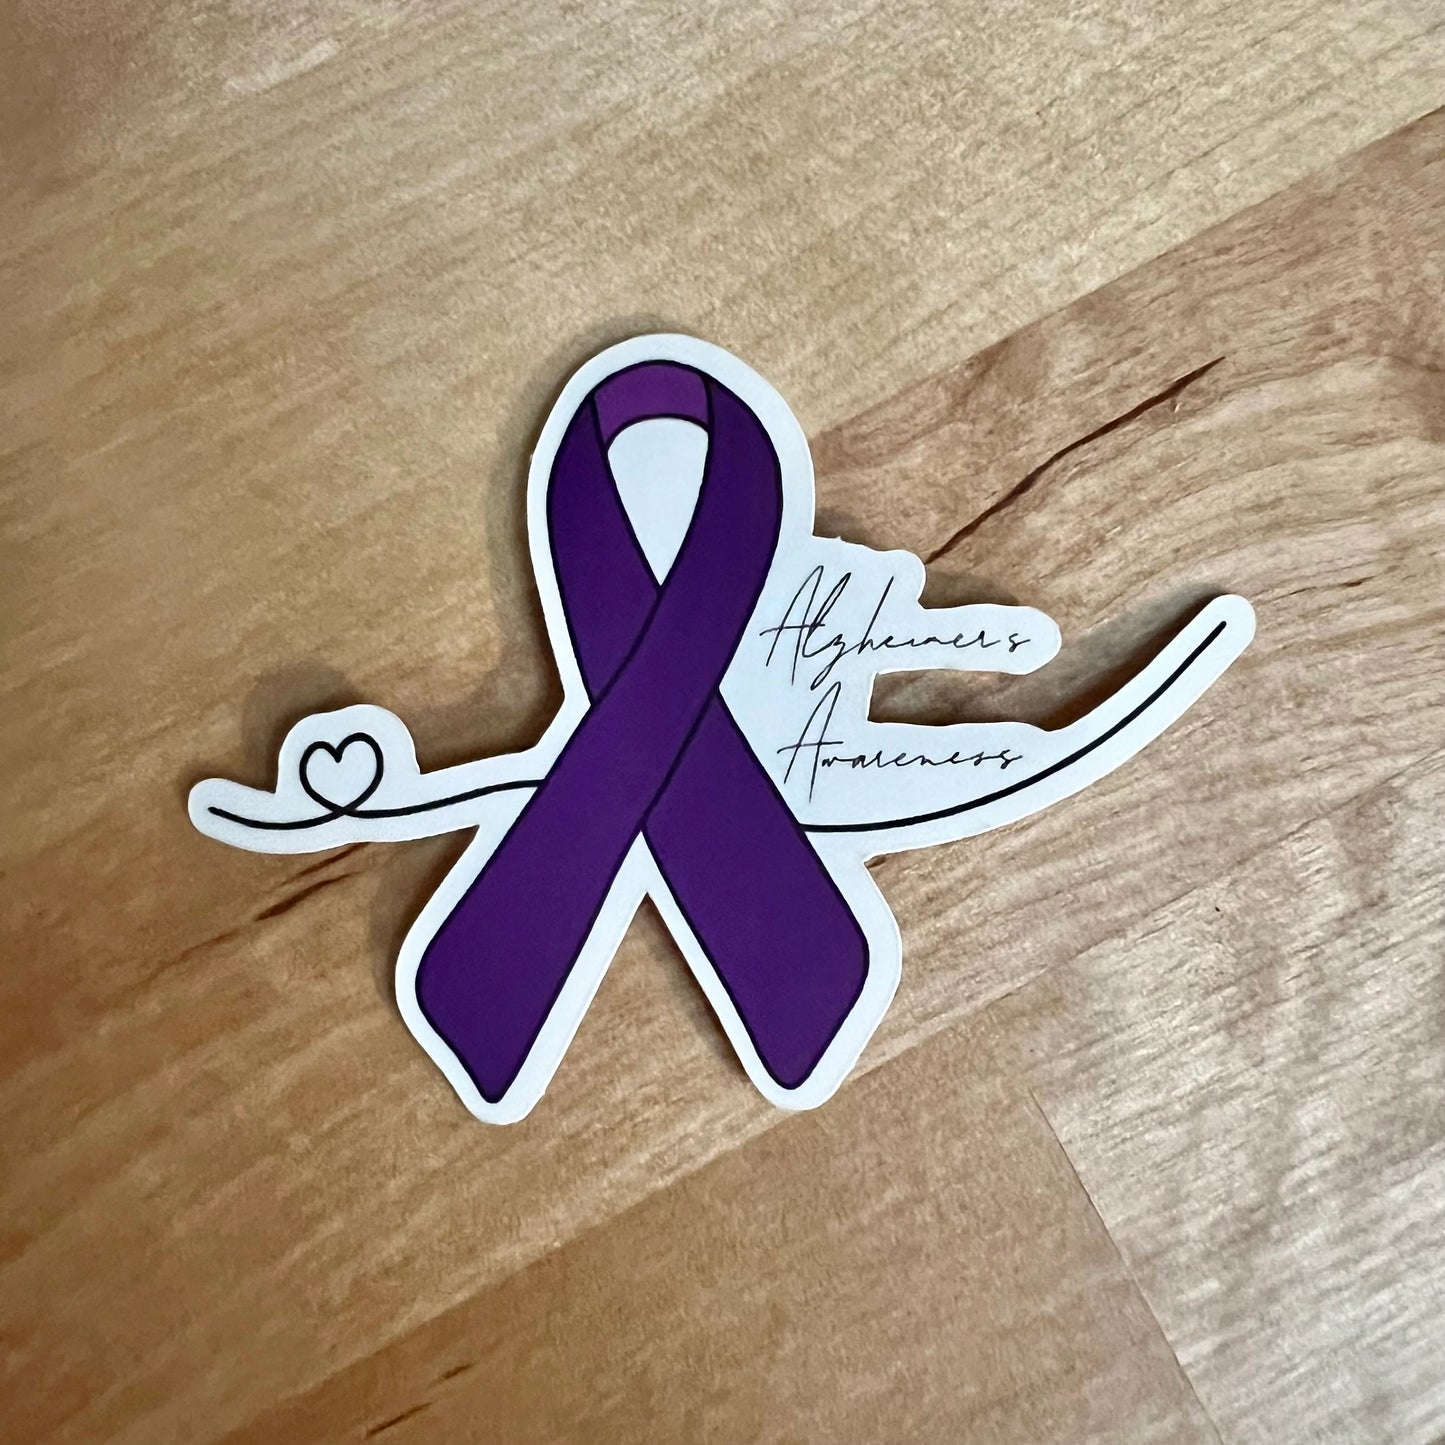 Alzheimer's Awareness Sticker